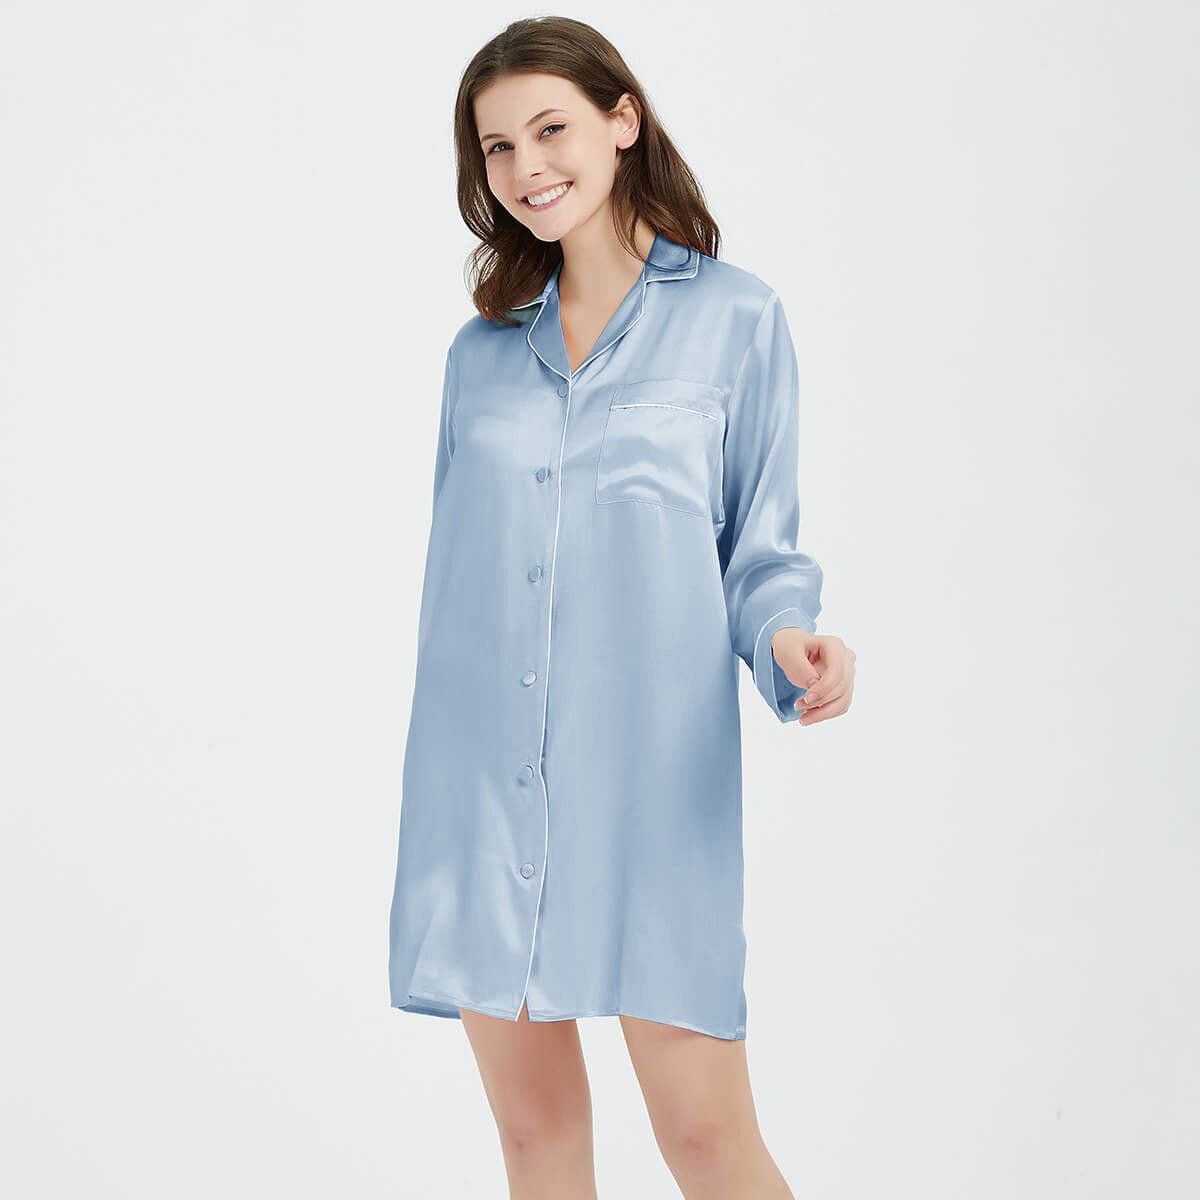 Women Sexy Satin Nightshirt Button Down V-Neck Sleepshirt Sleepwear Dress 